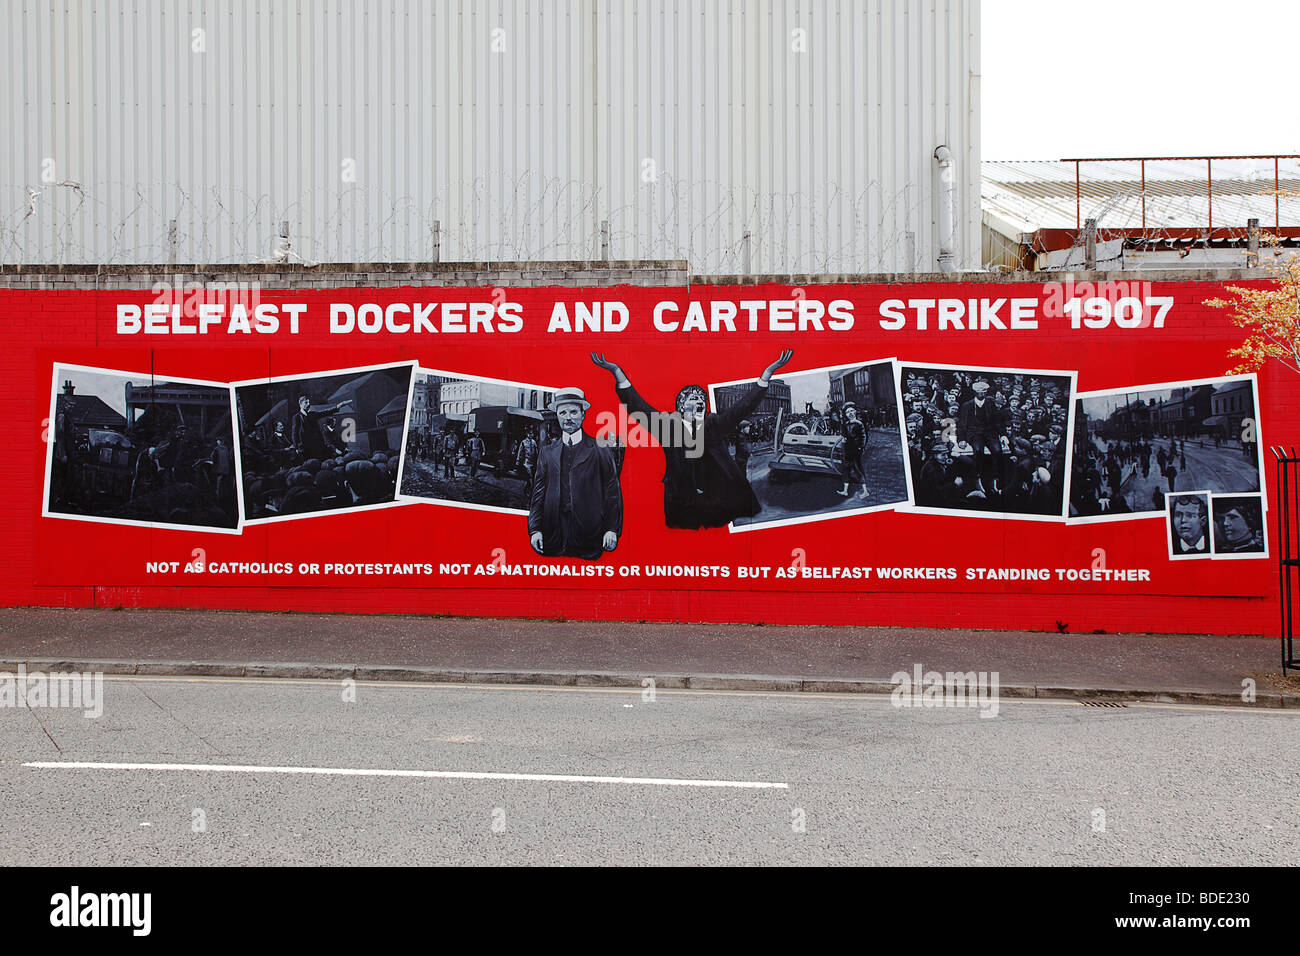 L'Irlande du Nord, Belfast, Falls Road, Murale commémorant les 1907 dockers et charretiers grève Banque D'Images